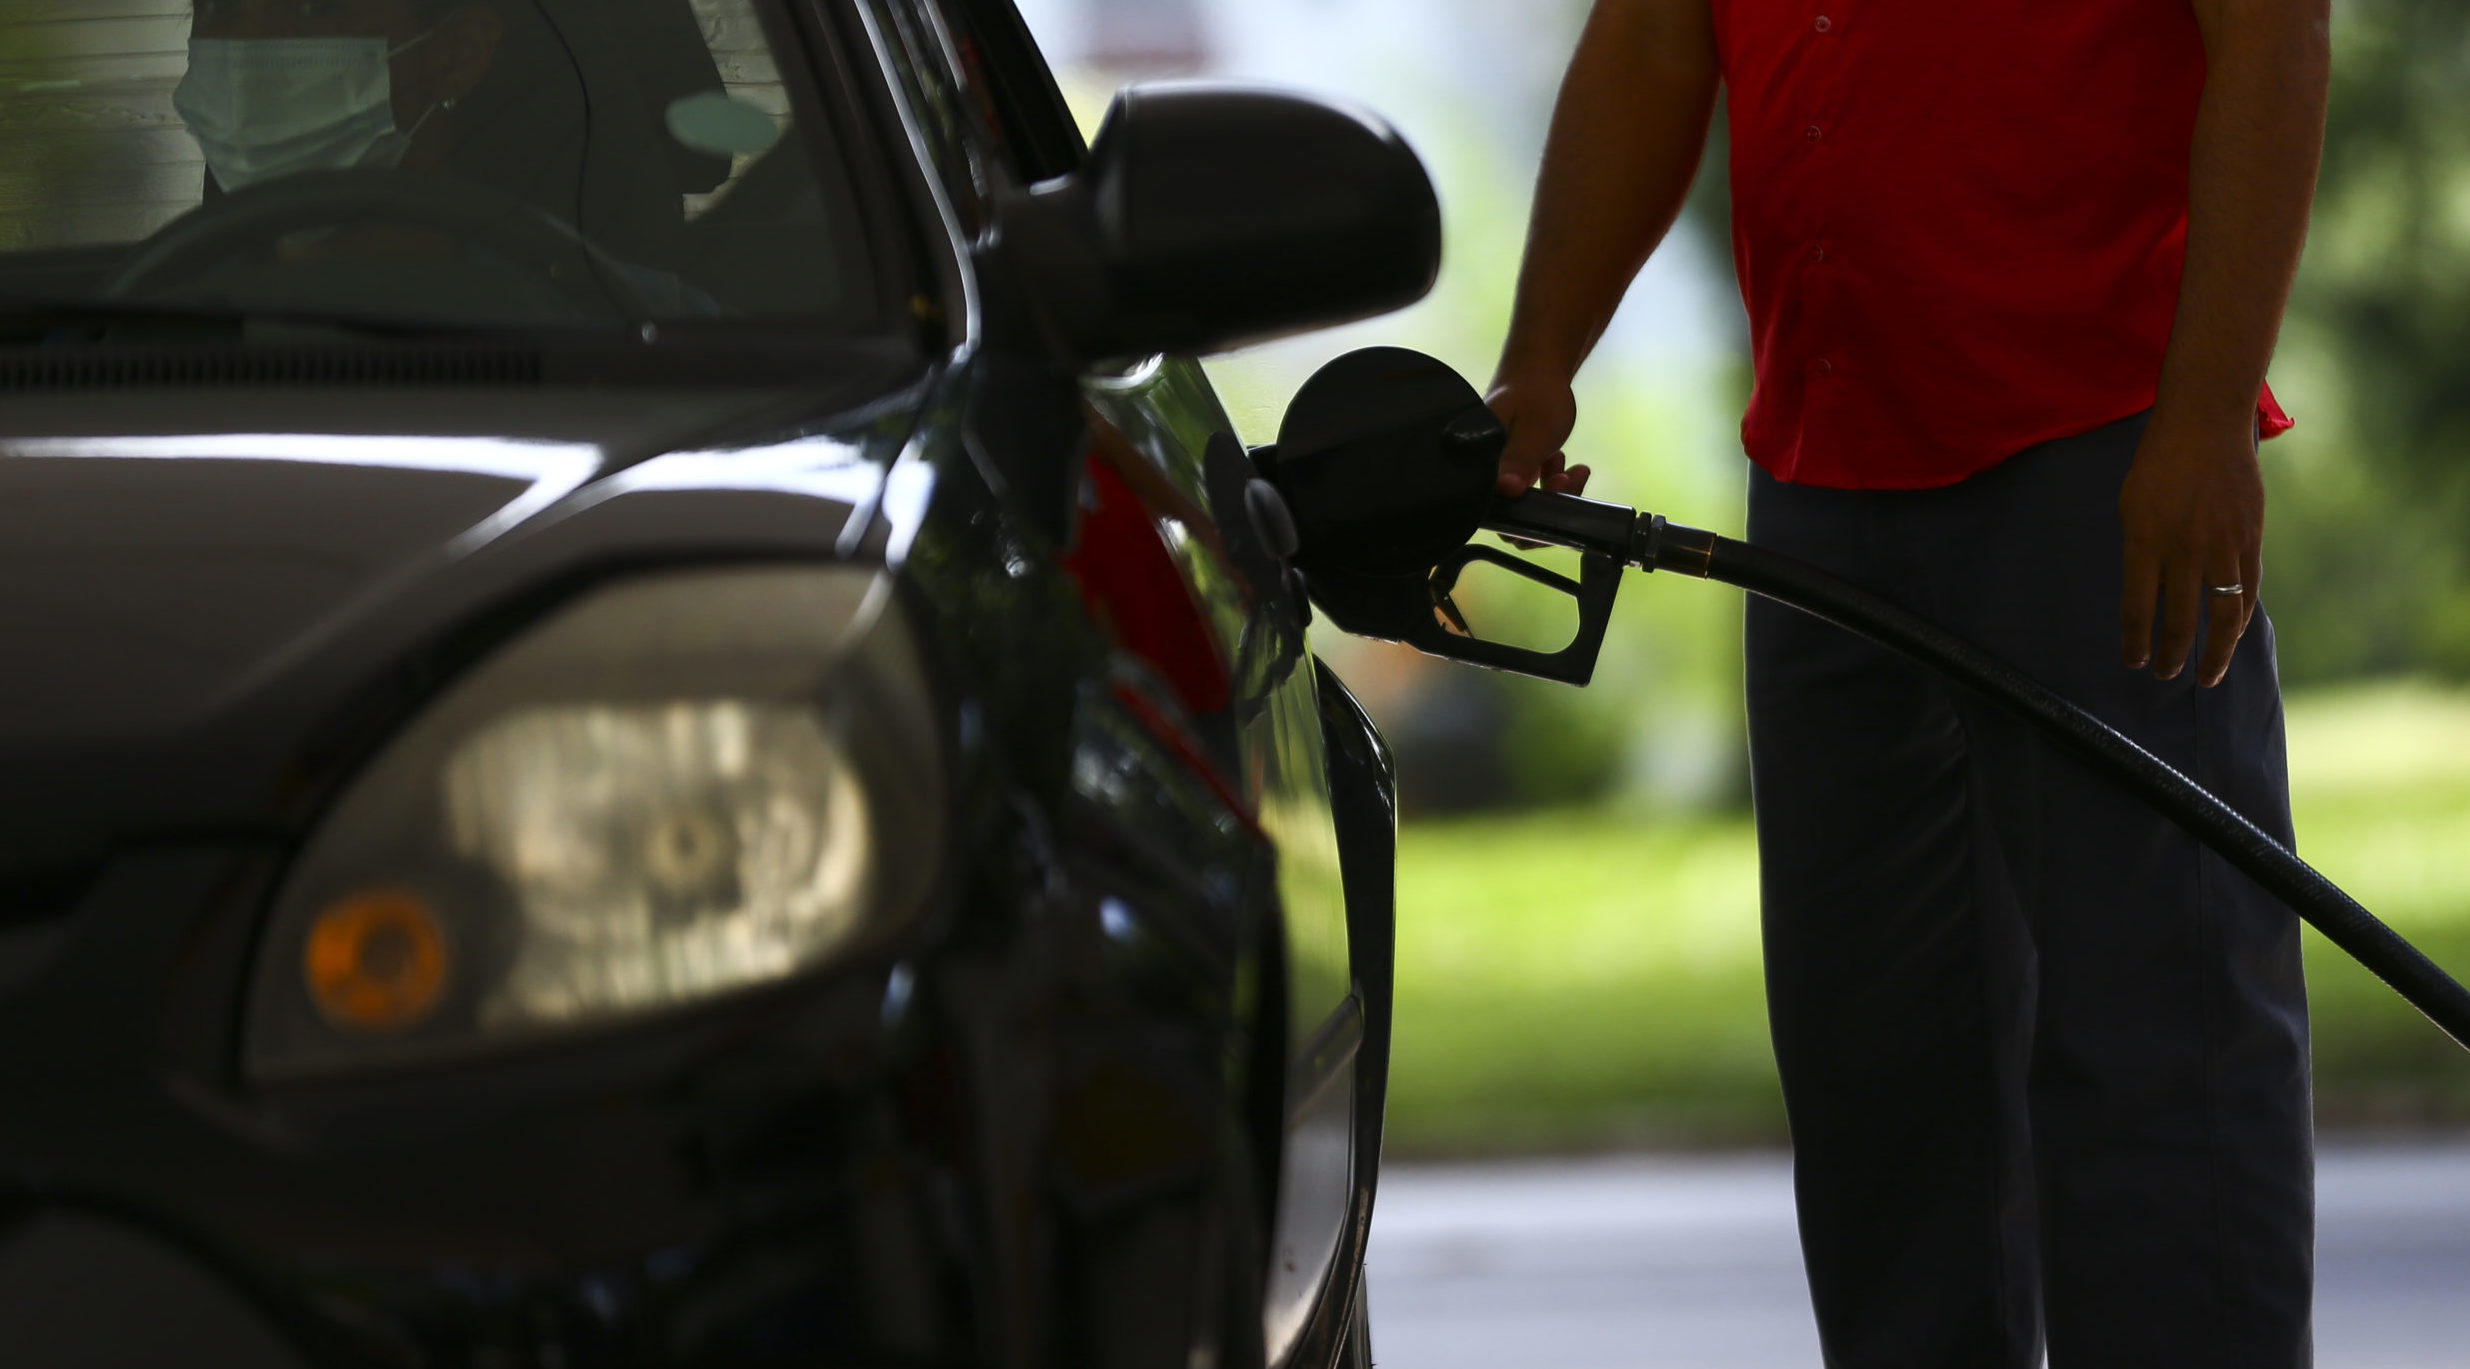 Gasolina cara pesa mais no bolso do brasileiro, diz Oxford Economics